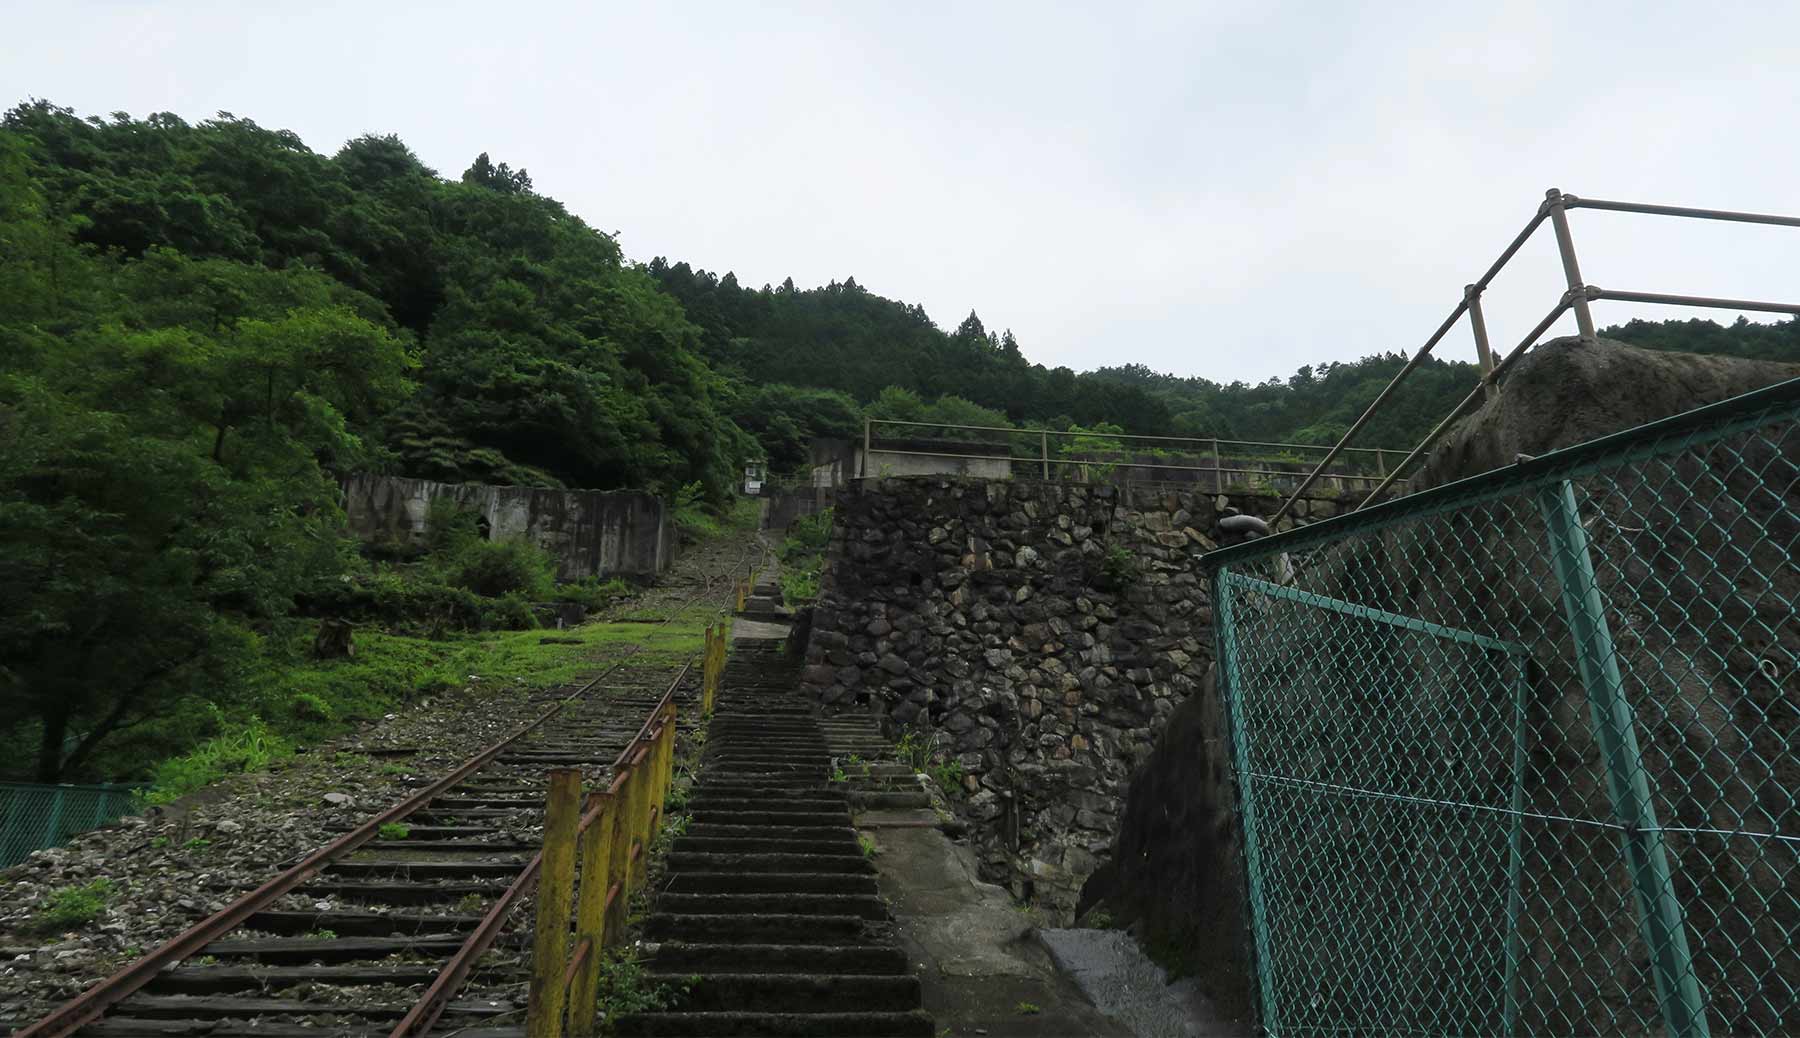 Mikobata Ore Processing Site Ruins